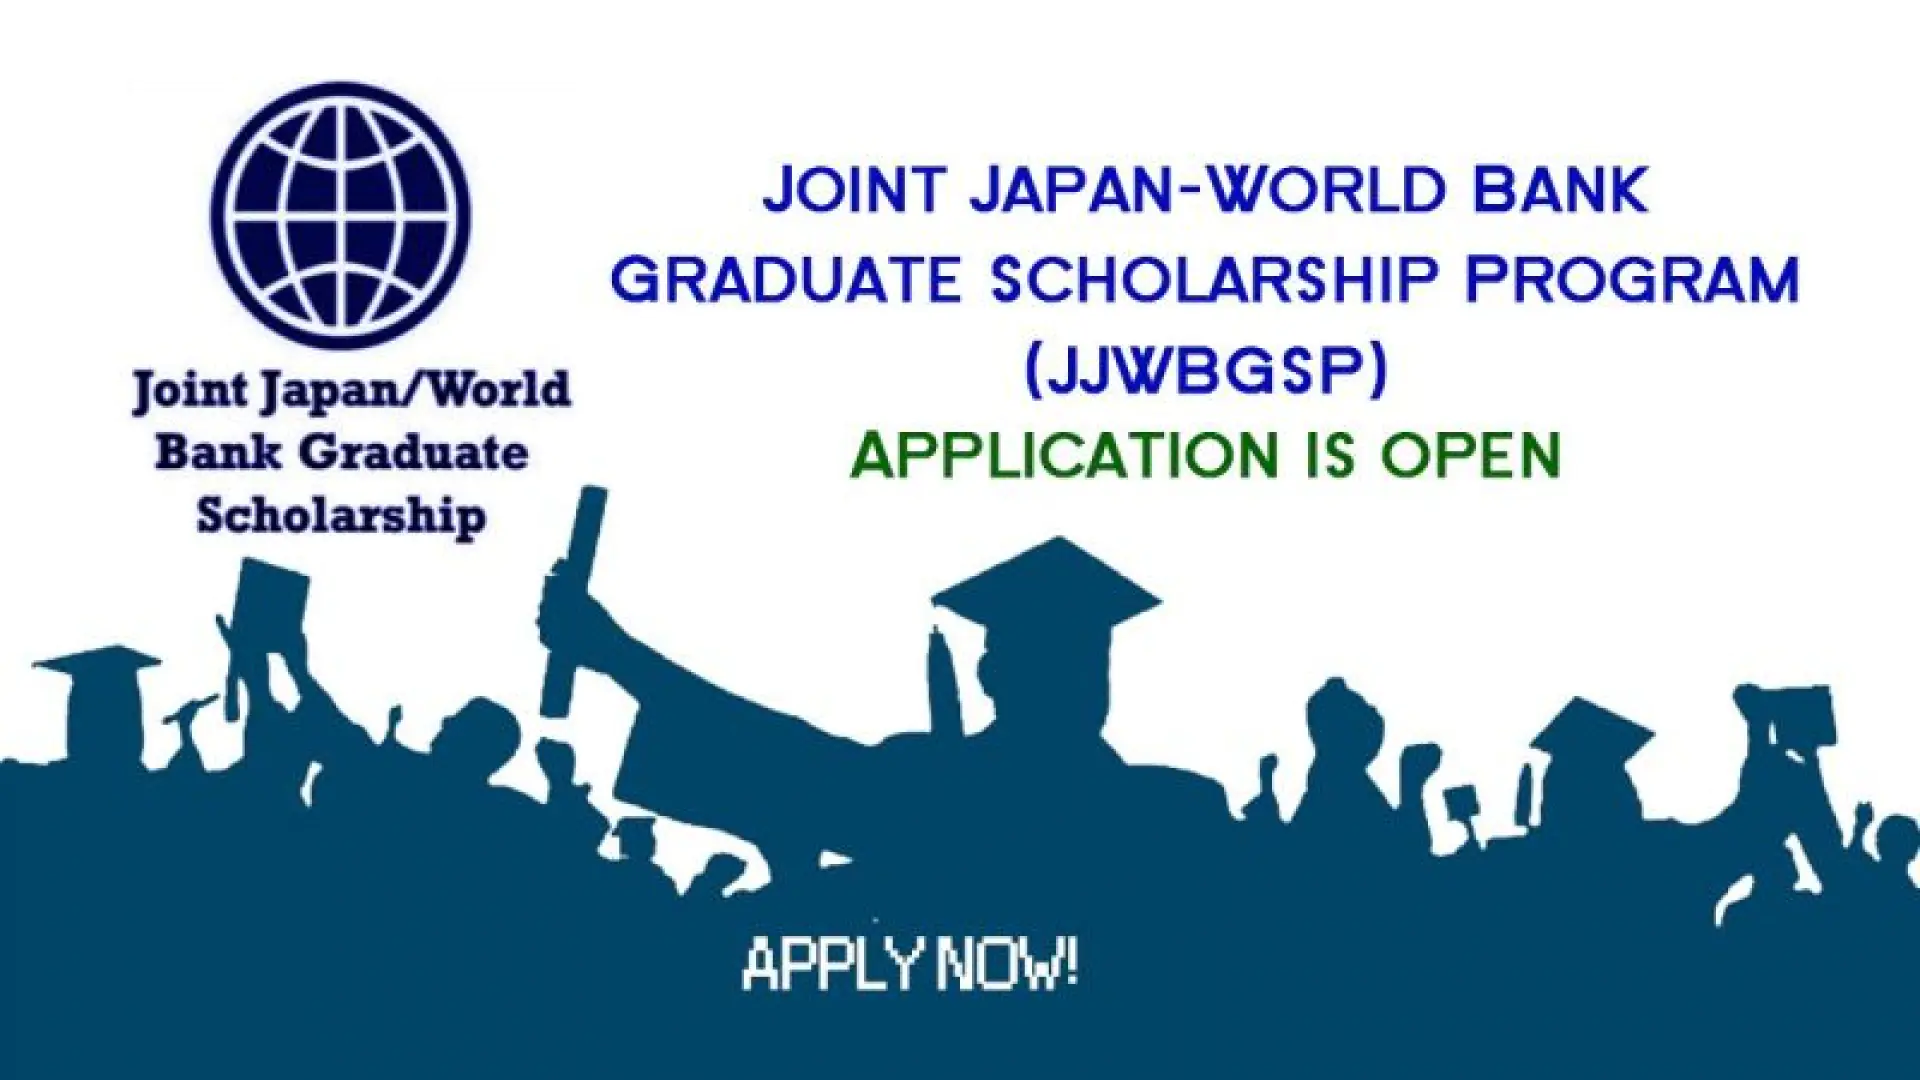 Magistratura bosqichini o’qish uchun Joint Japan/World Bank Graduate Scholarship Program (JJWBGSP) dasturi. Barcha xarajatlar to'liq moliyalashtiriladi